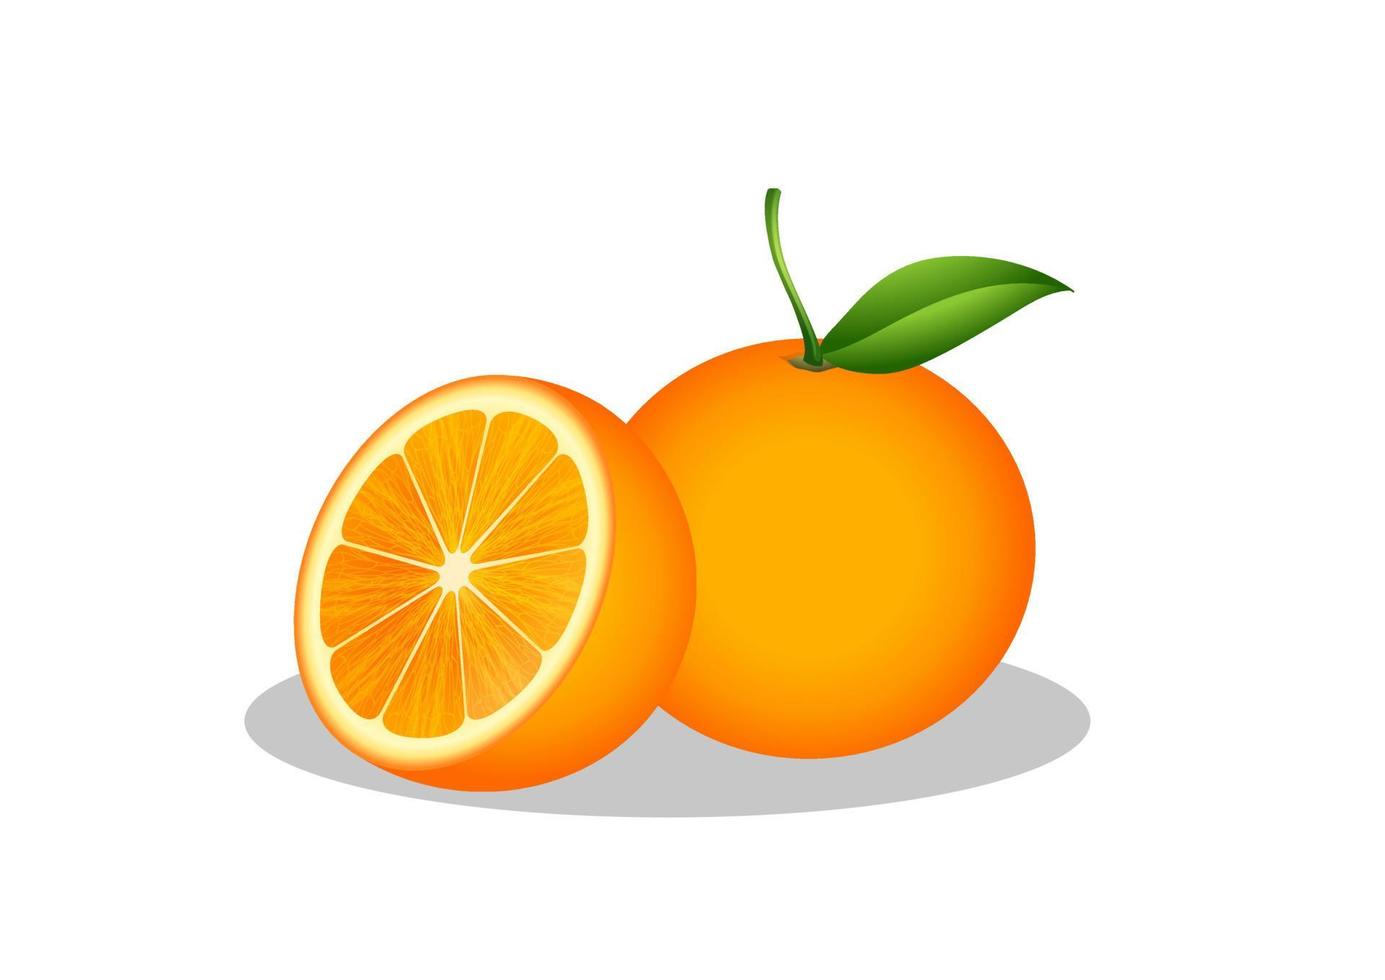 arancia e mezza arancia frutta illustrazione vettoriale isolato su sfondo bianco